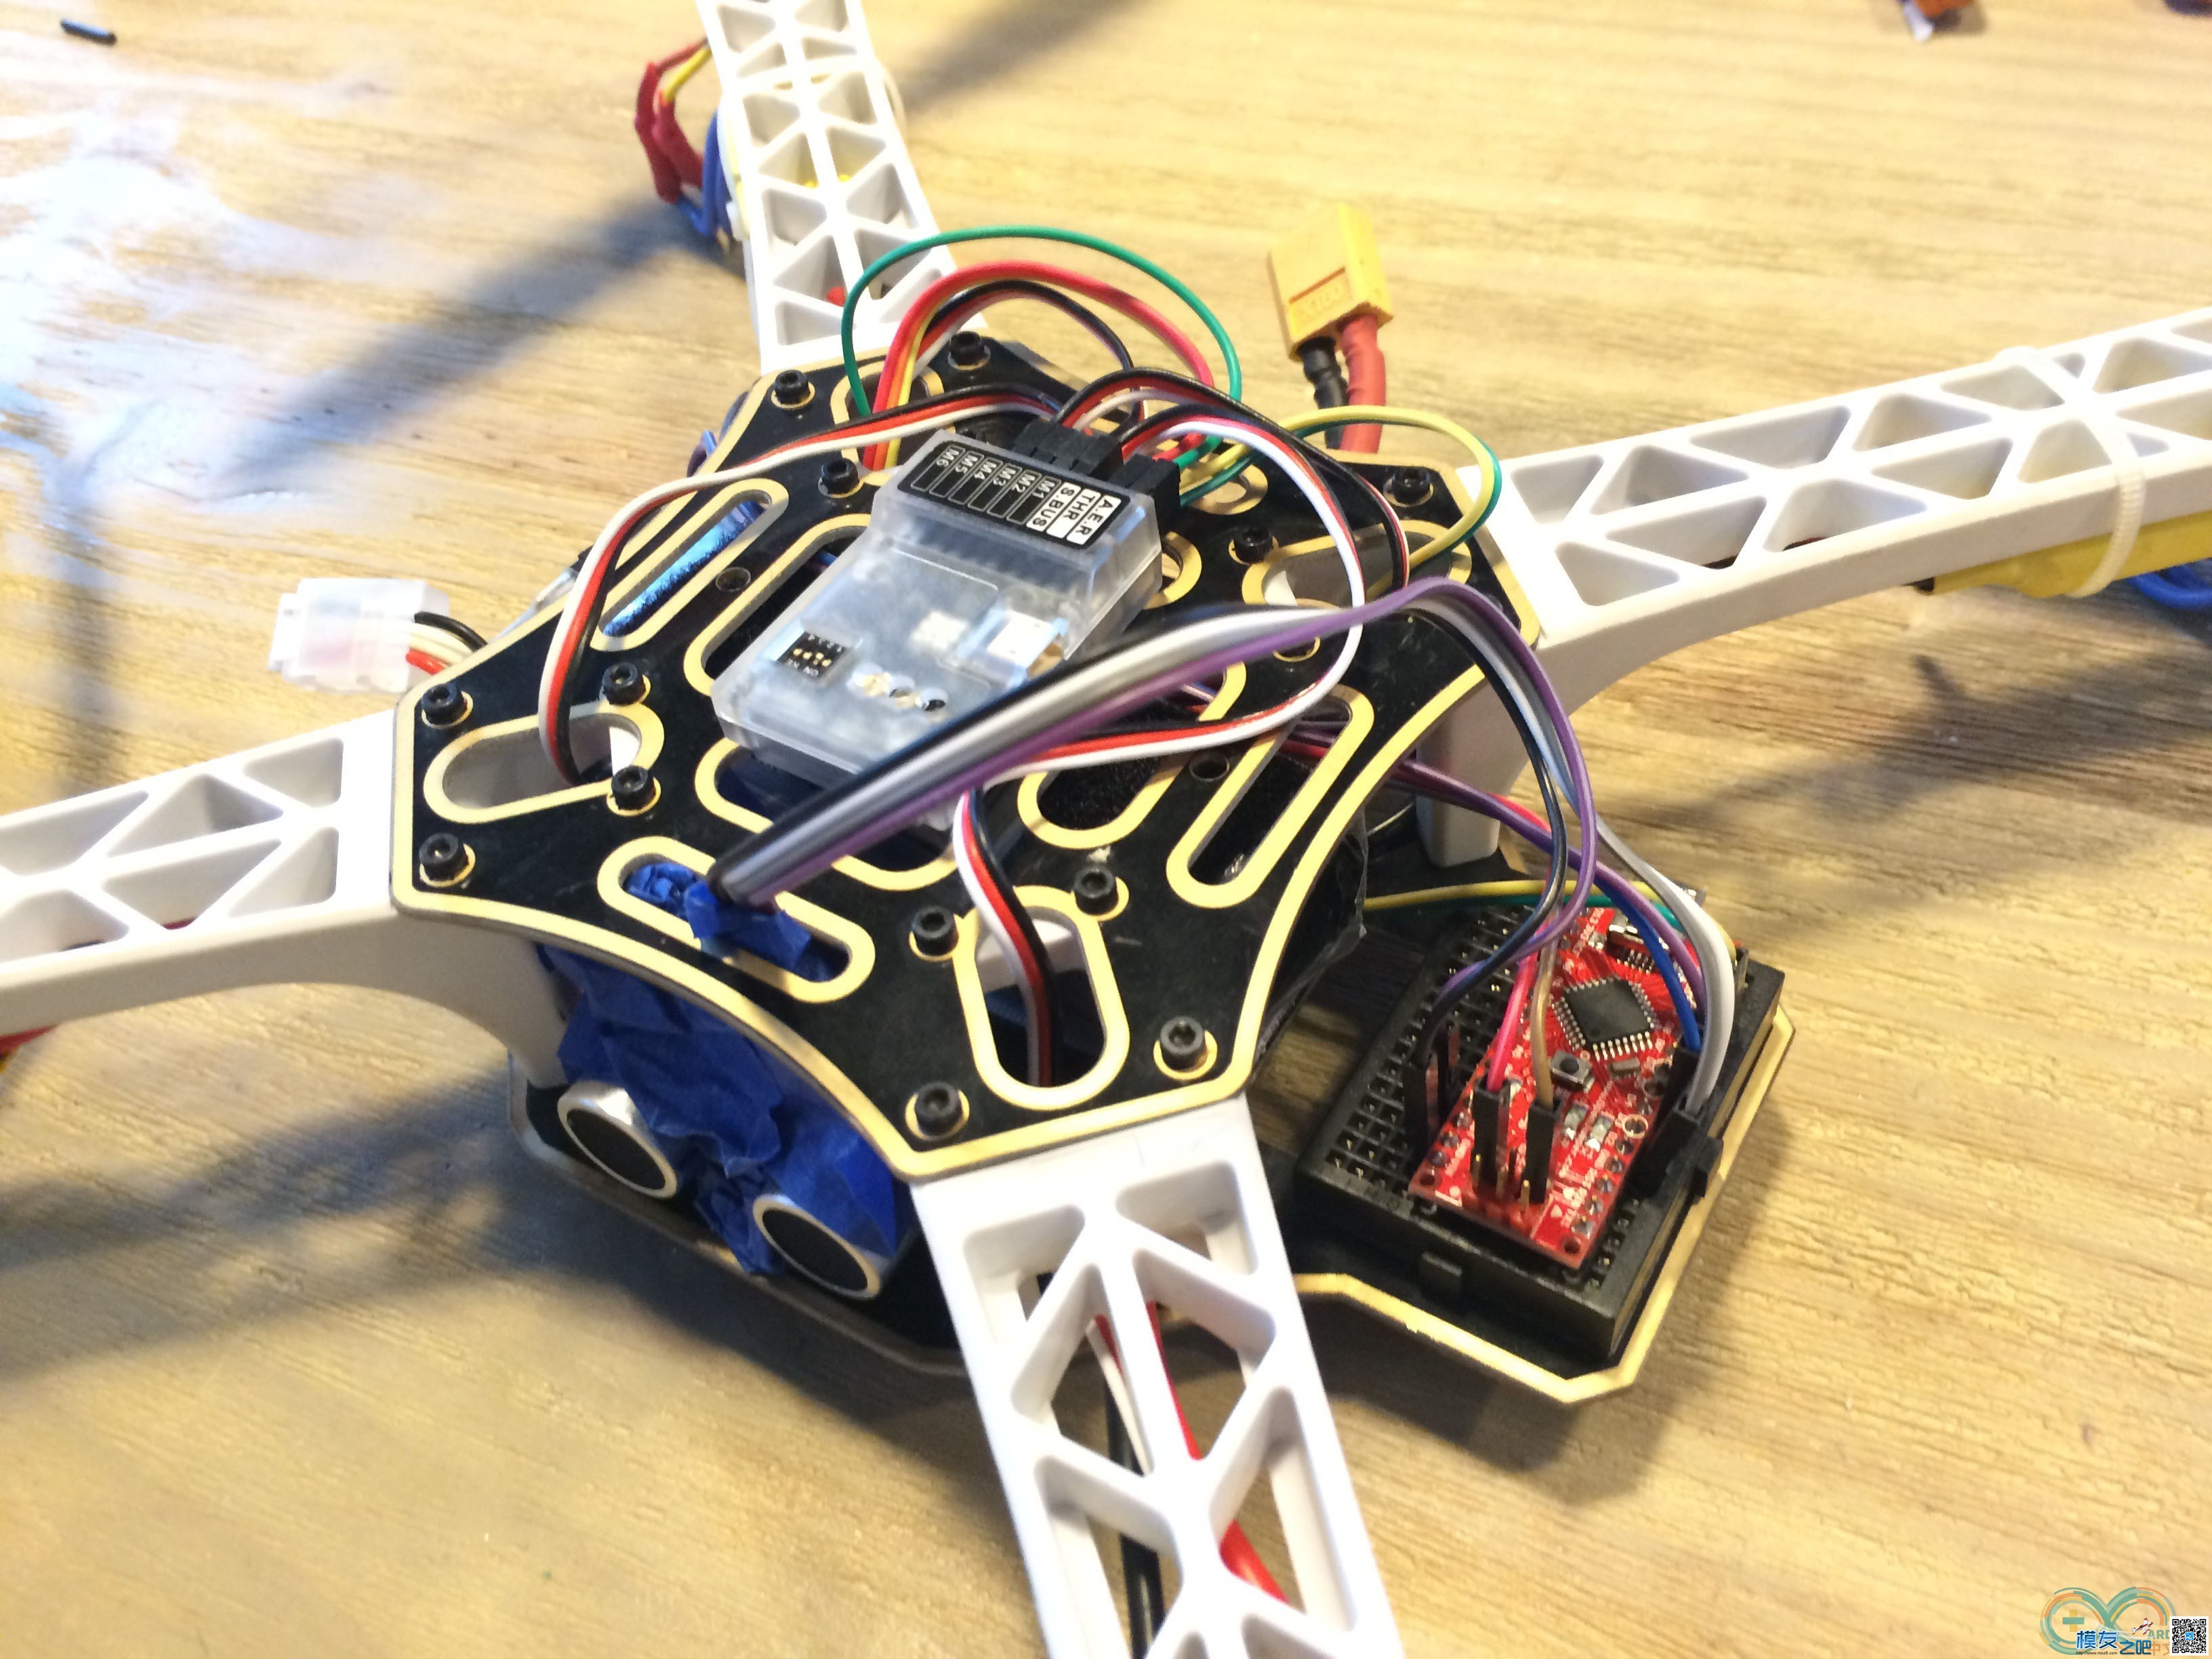 DO VIS：Arduino+超声波实现自主避障解决方案整理 无人机,解决方案,超声波,飞行器,心情 作者:DOVIS666 5567 